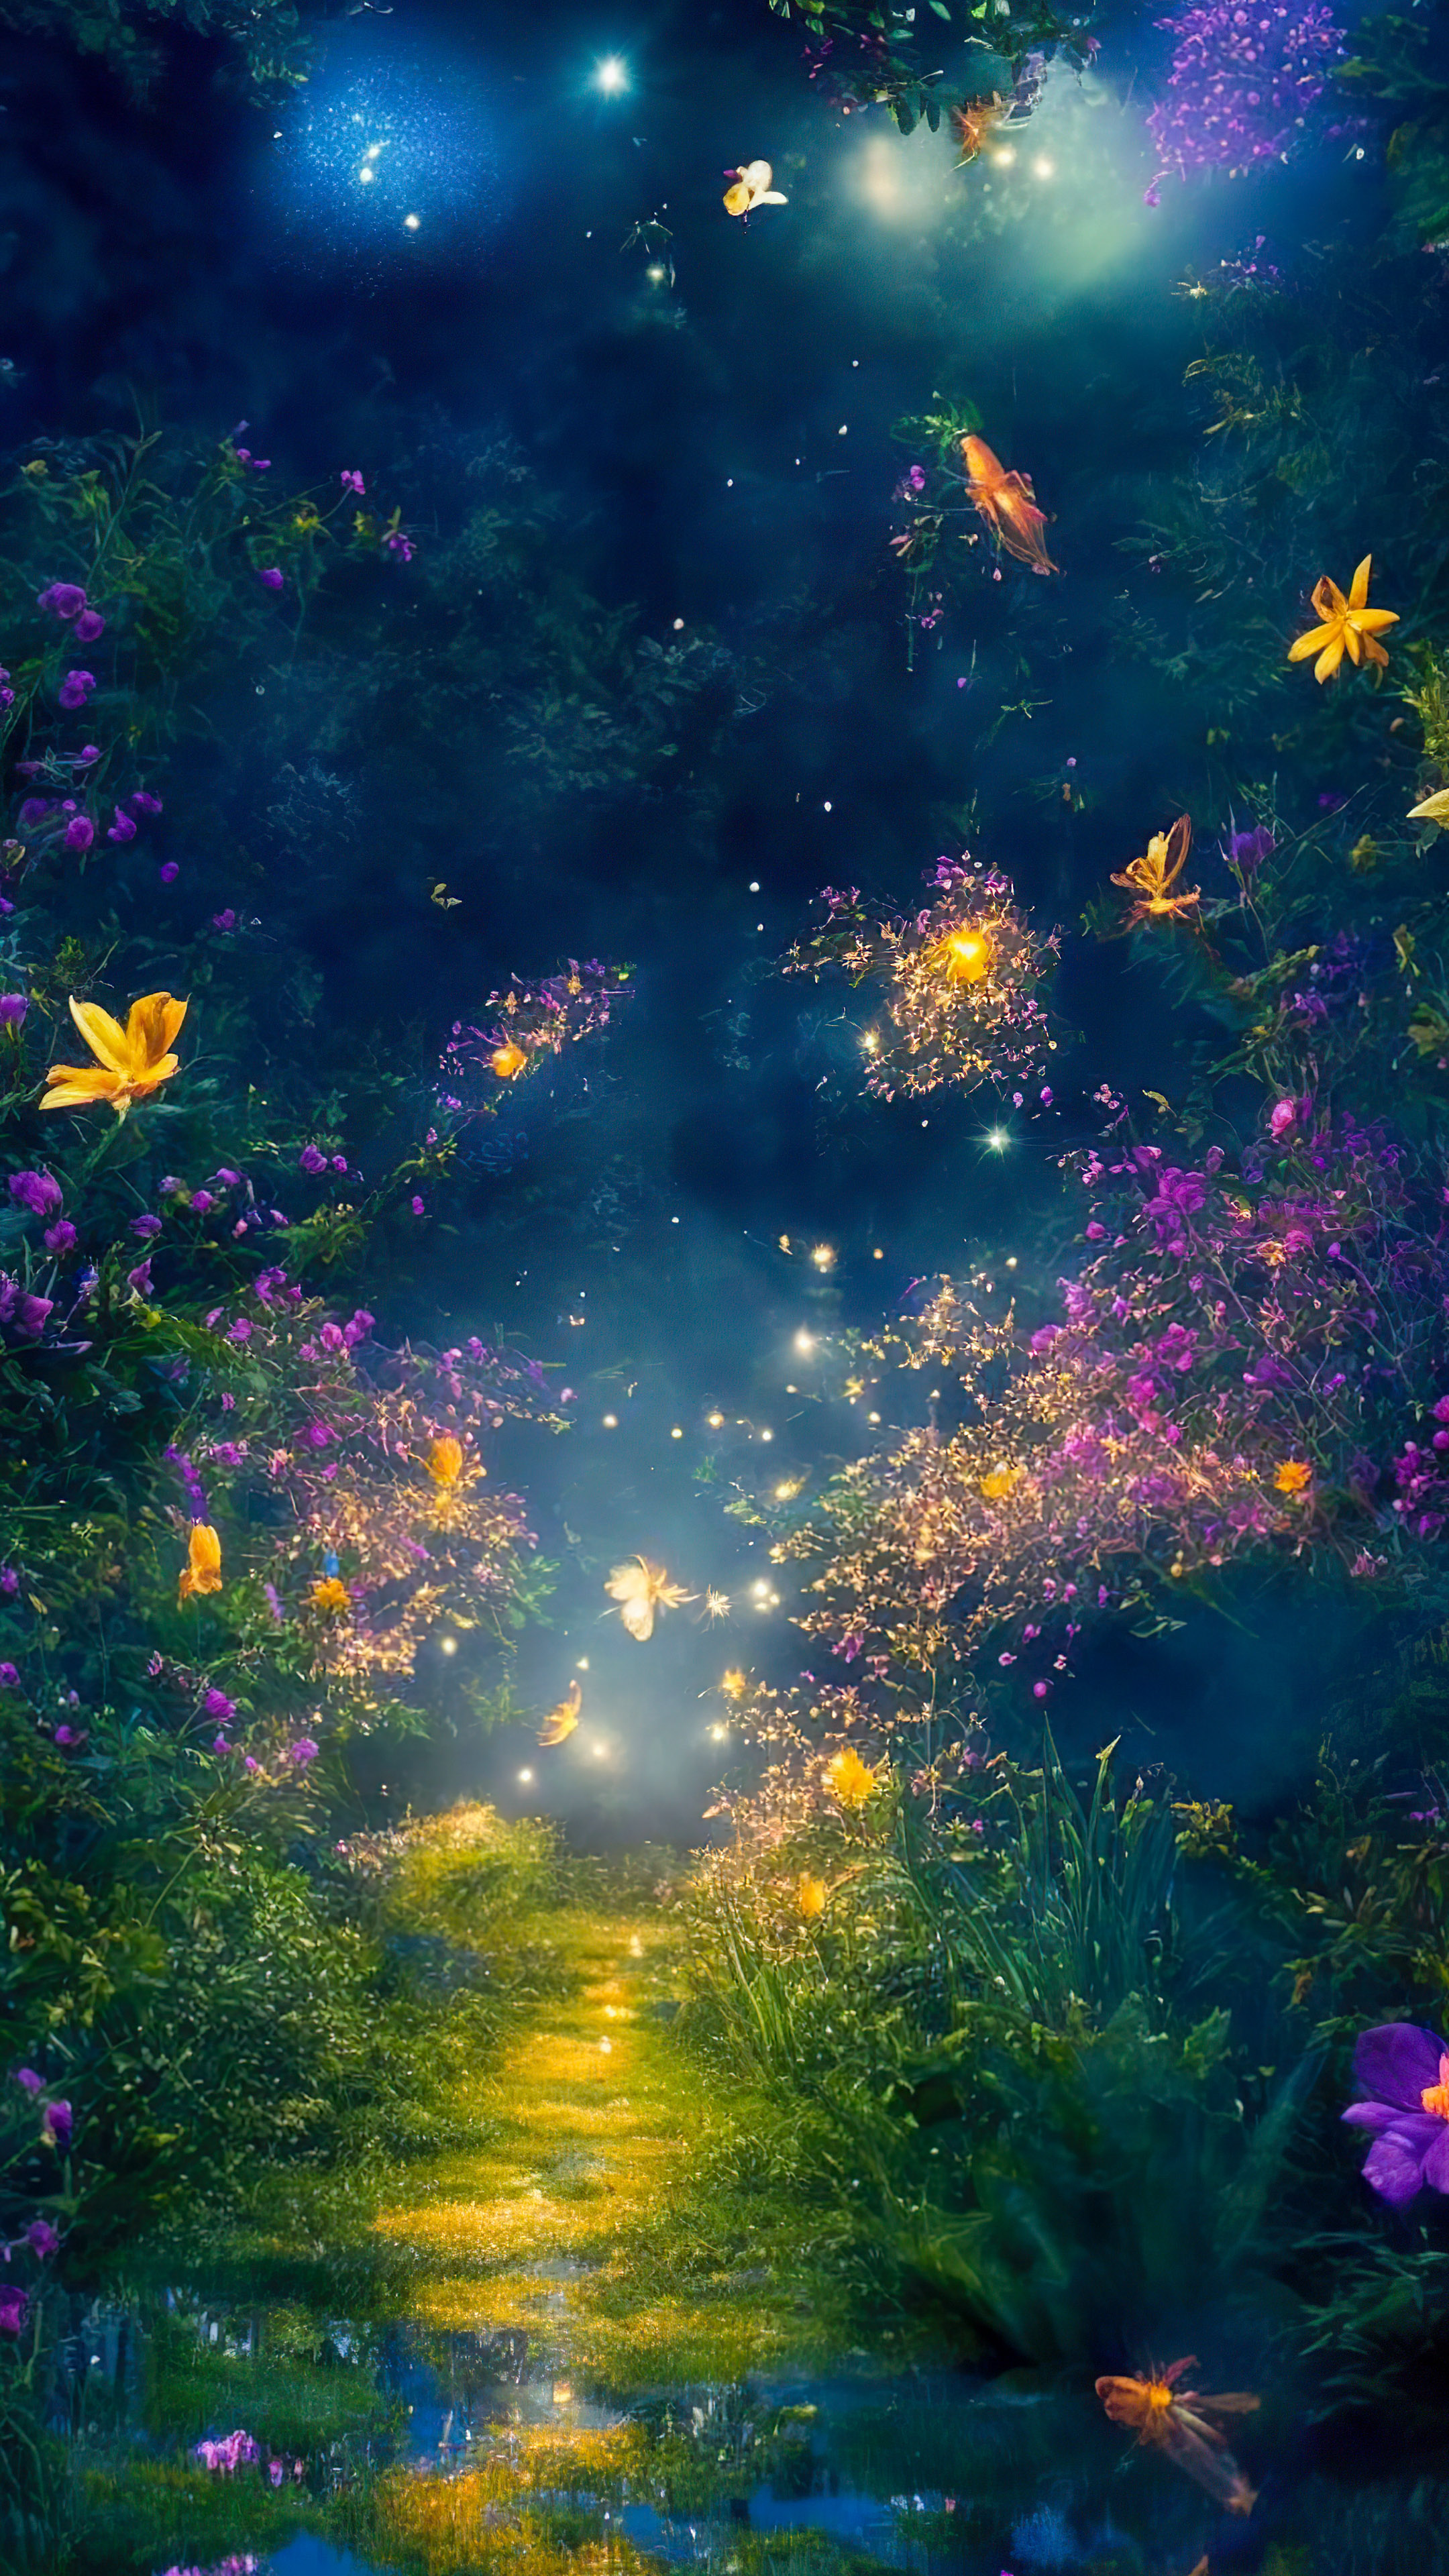 Téléchargez la fantaisie de notre fond d'écran de paysage fantastique, illustrant un jardin féerique la nuit, où les lucioles dansent autour de fleurs lumineuses et vibrantes.